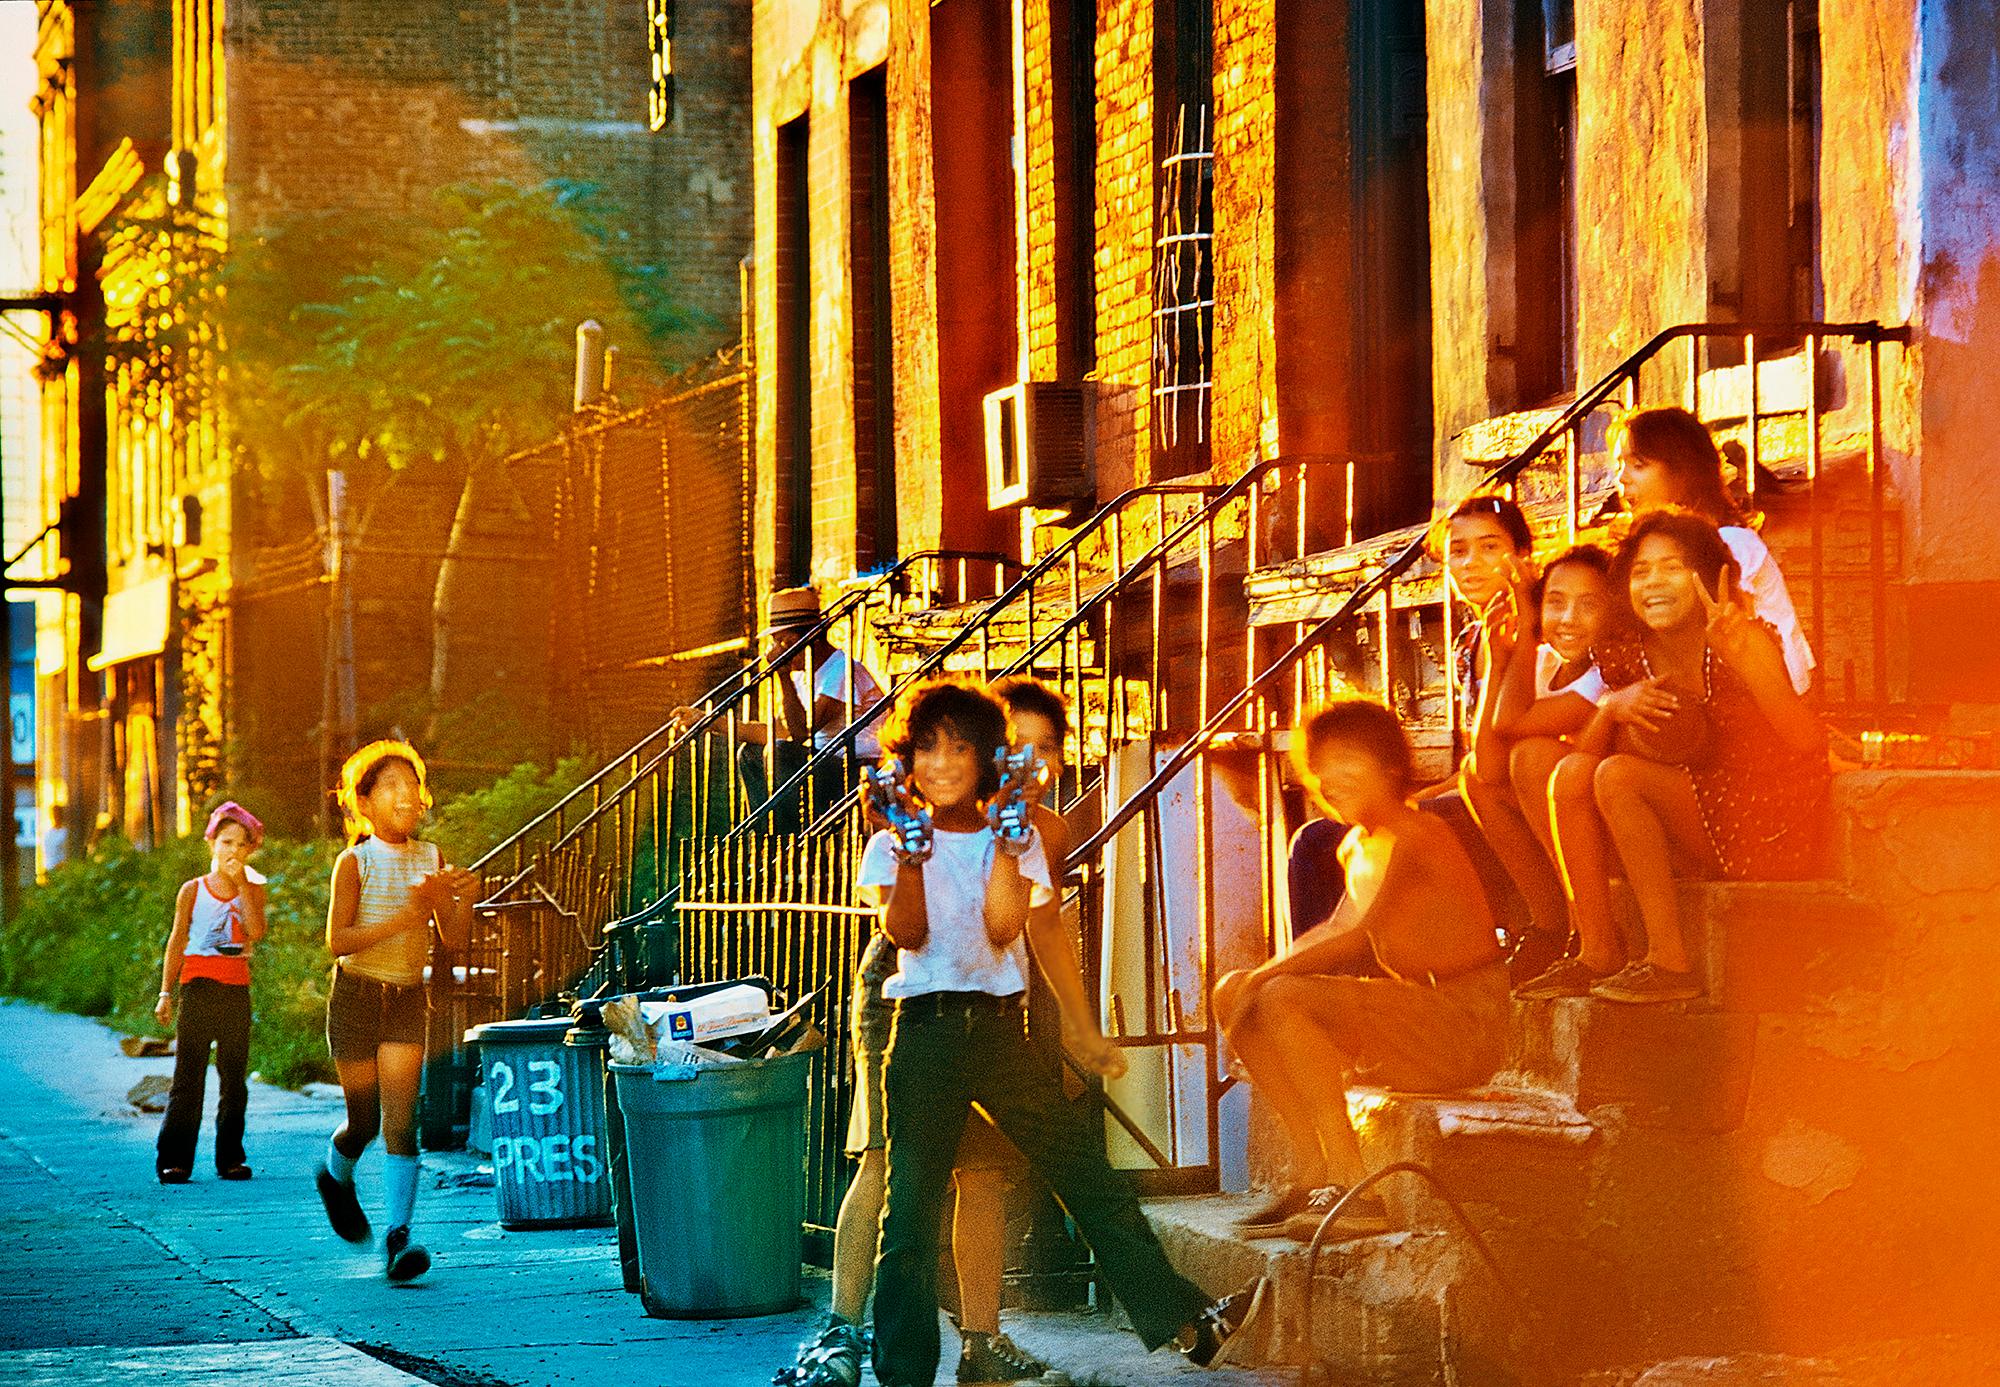 Neighborhood Kids on Stoop in Red Hood Brooklyn  - Vintage Brooklyn 